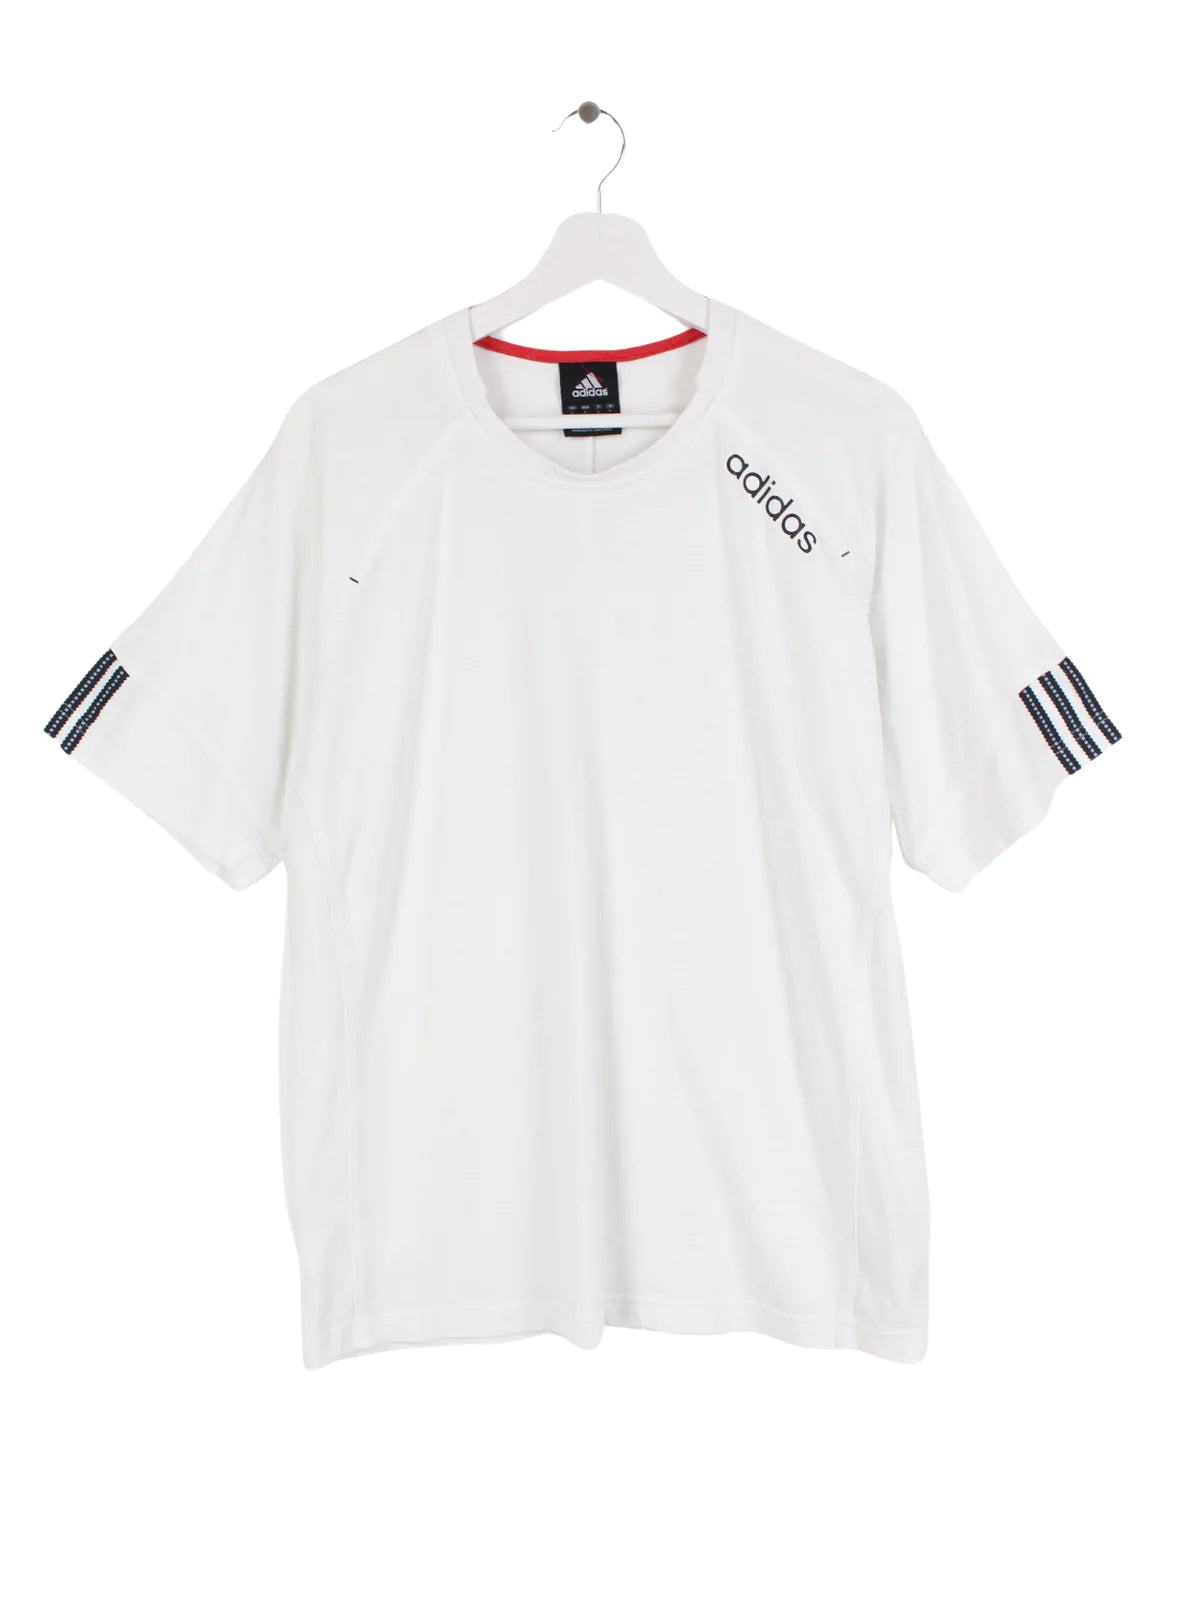 Adidas T-Shirt Weiß L